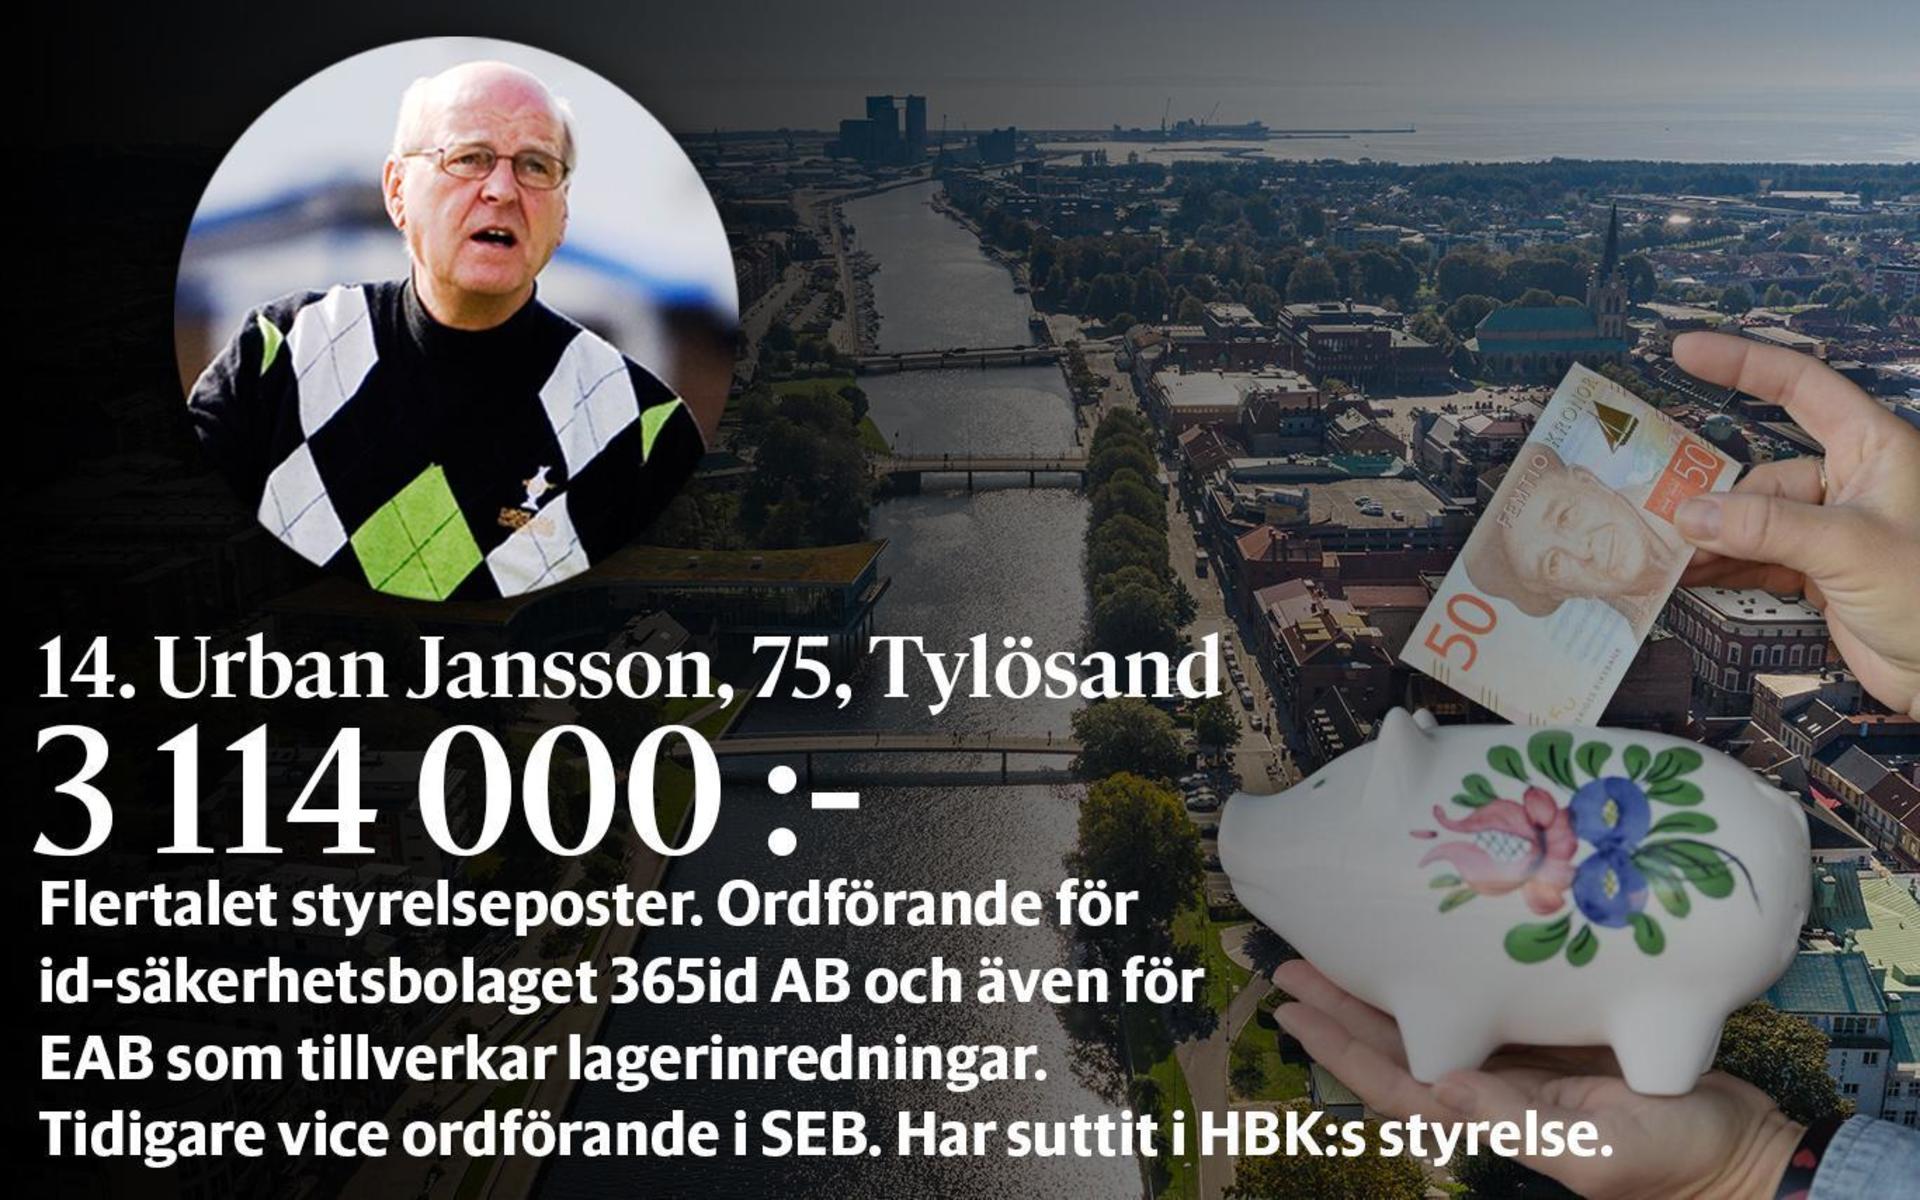 14. Urban Jansson, fastställd förvärvsinkomst på 3 114 000 kronor och inkomst av kapital på 4 633 464 kronor placerar honom på plats 23 i den totala inkomstligan i Halmstad.